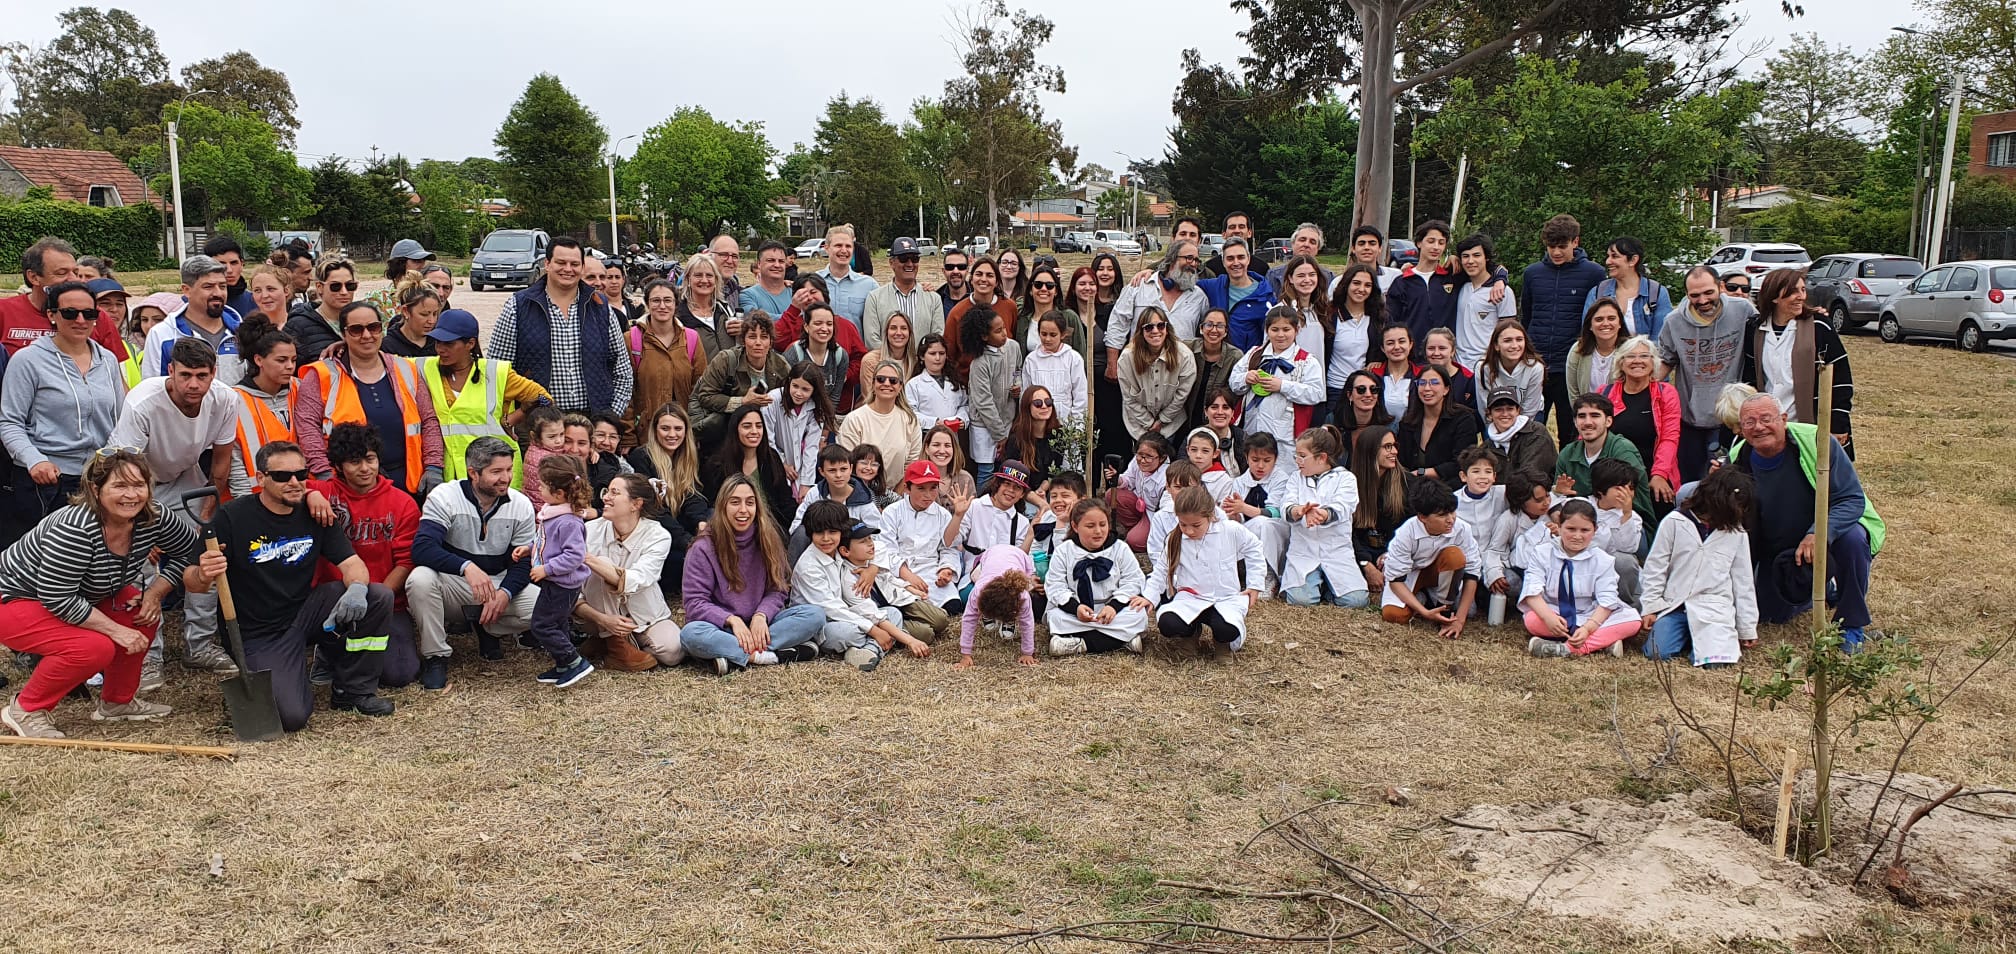 Foto grupal con todas las personas que participaron en la jornada de Plantatón en Ciudad de la Costa